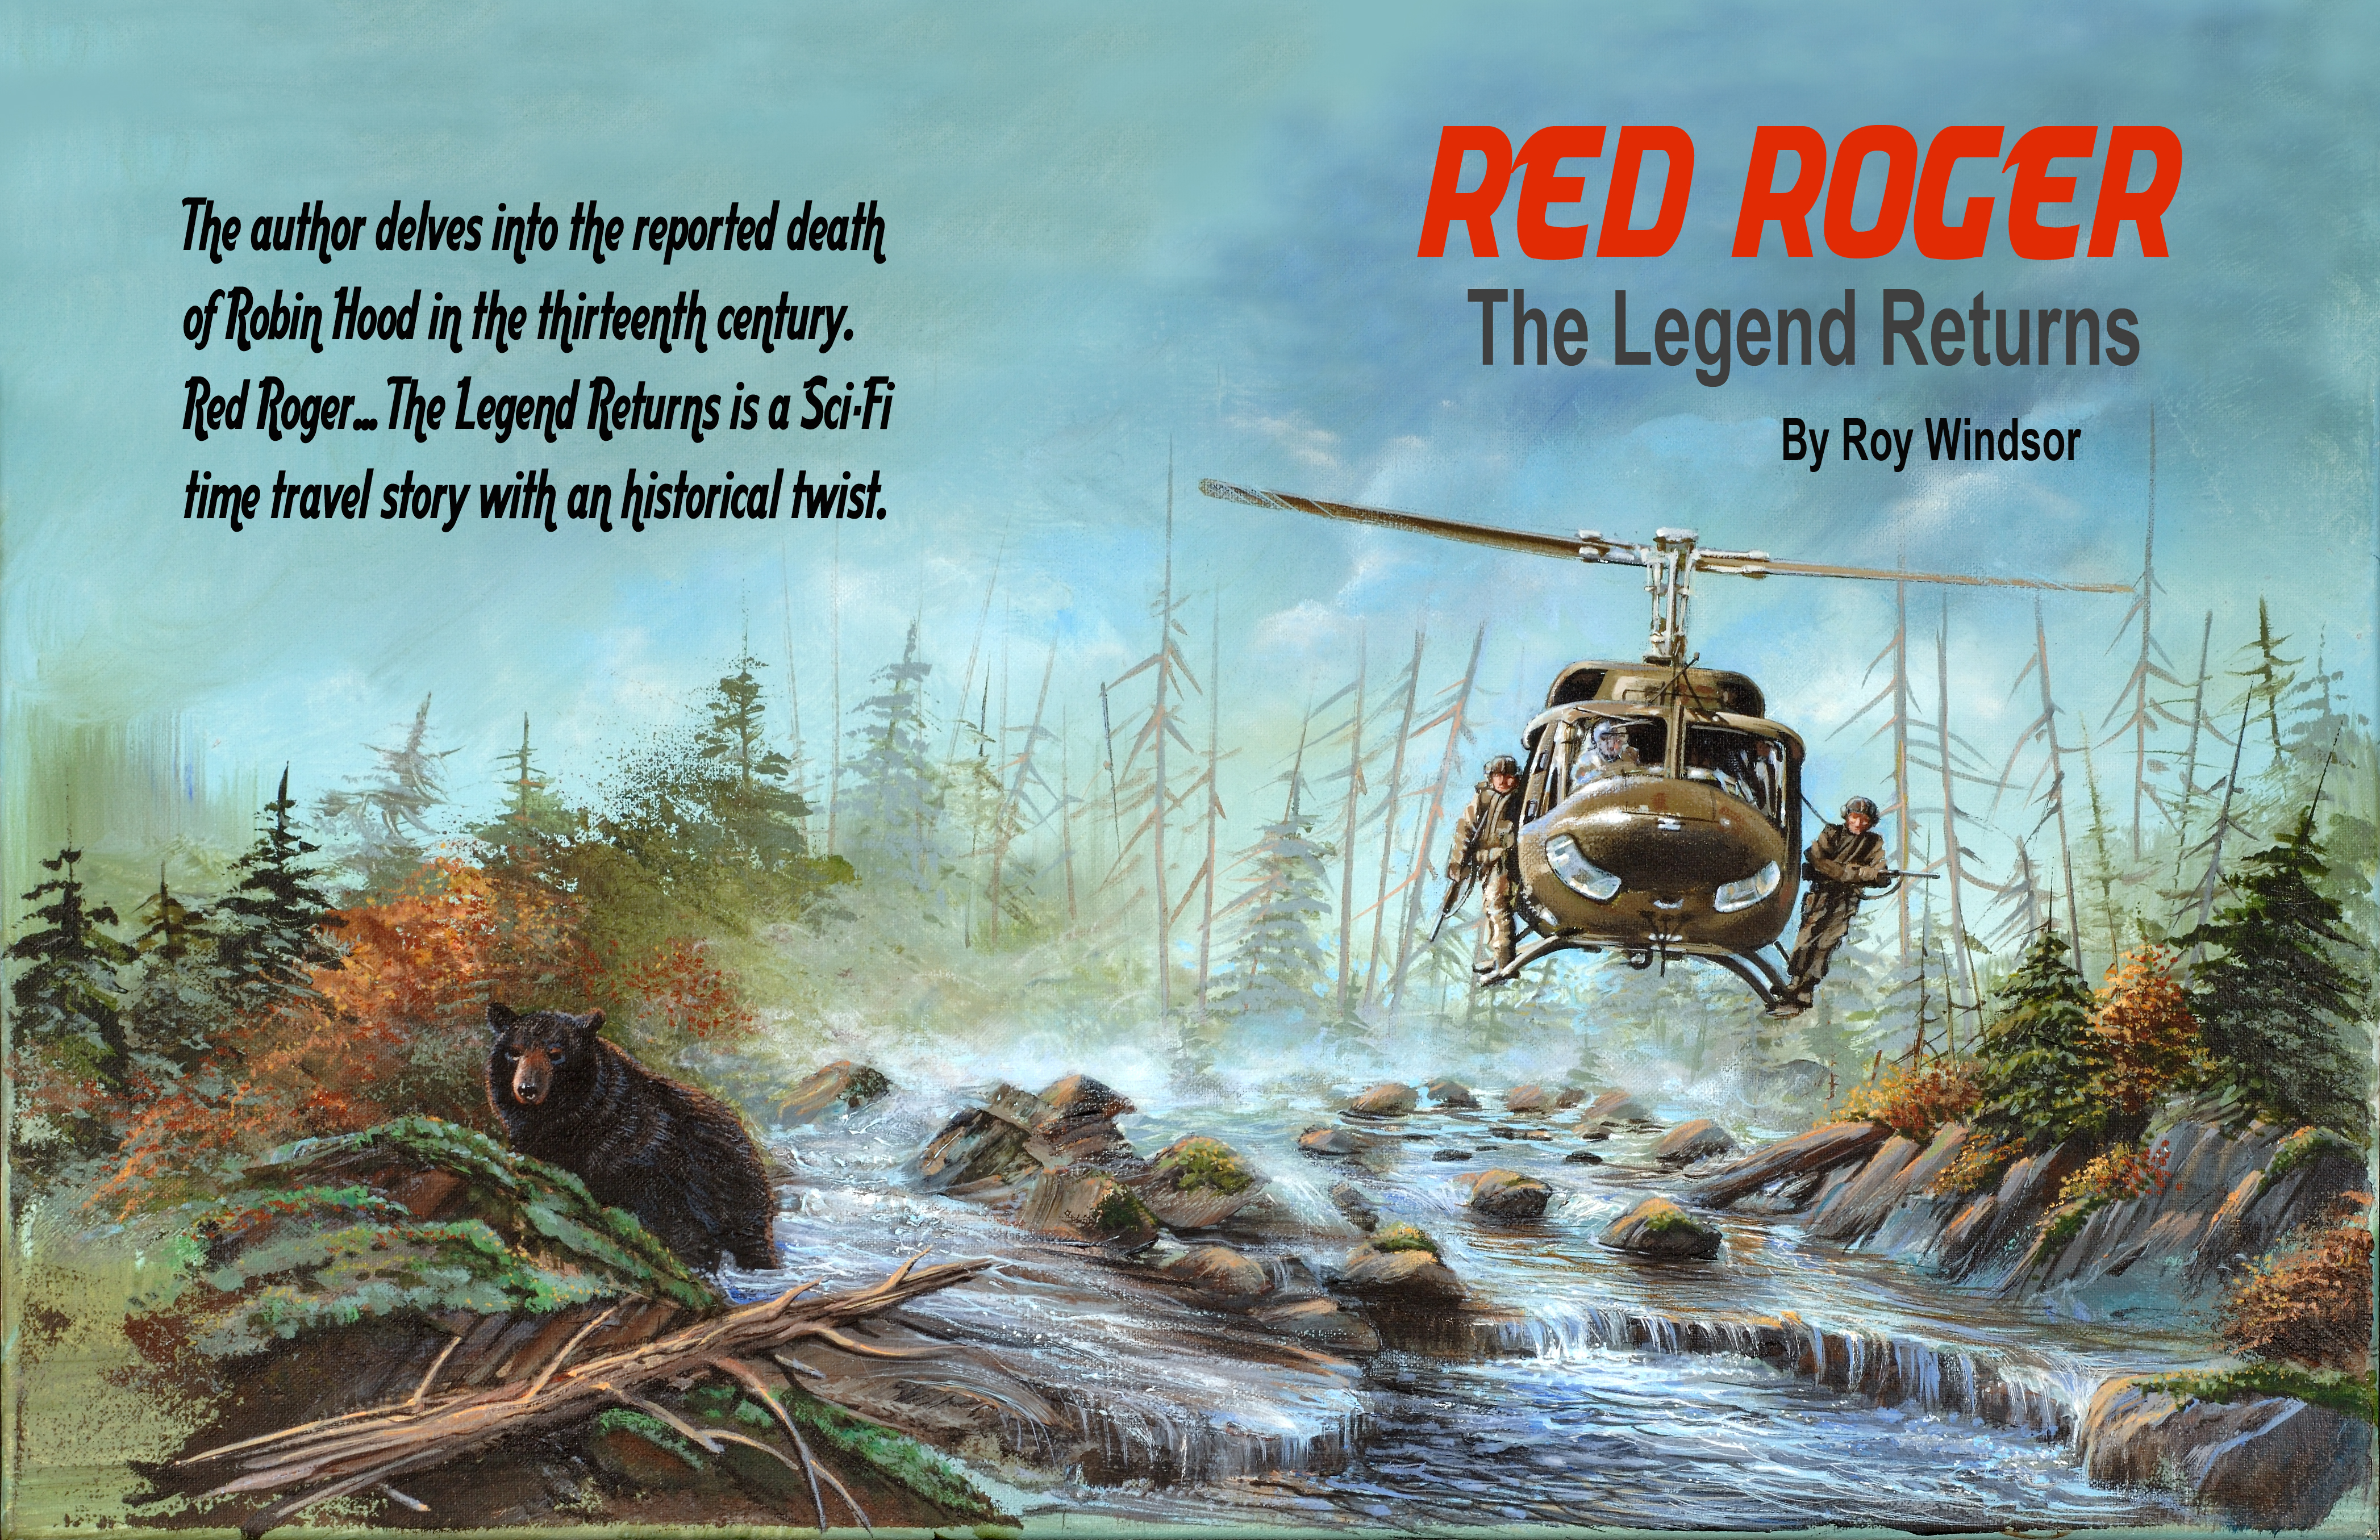 Red Roger...The Legend Returns